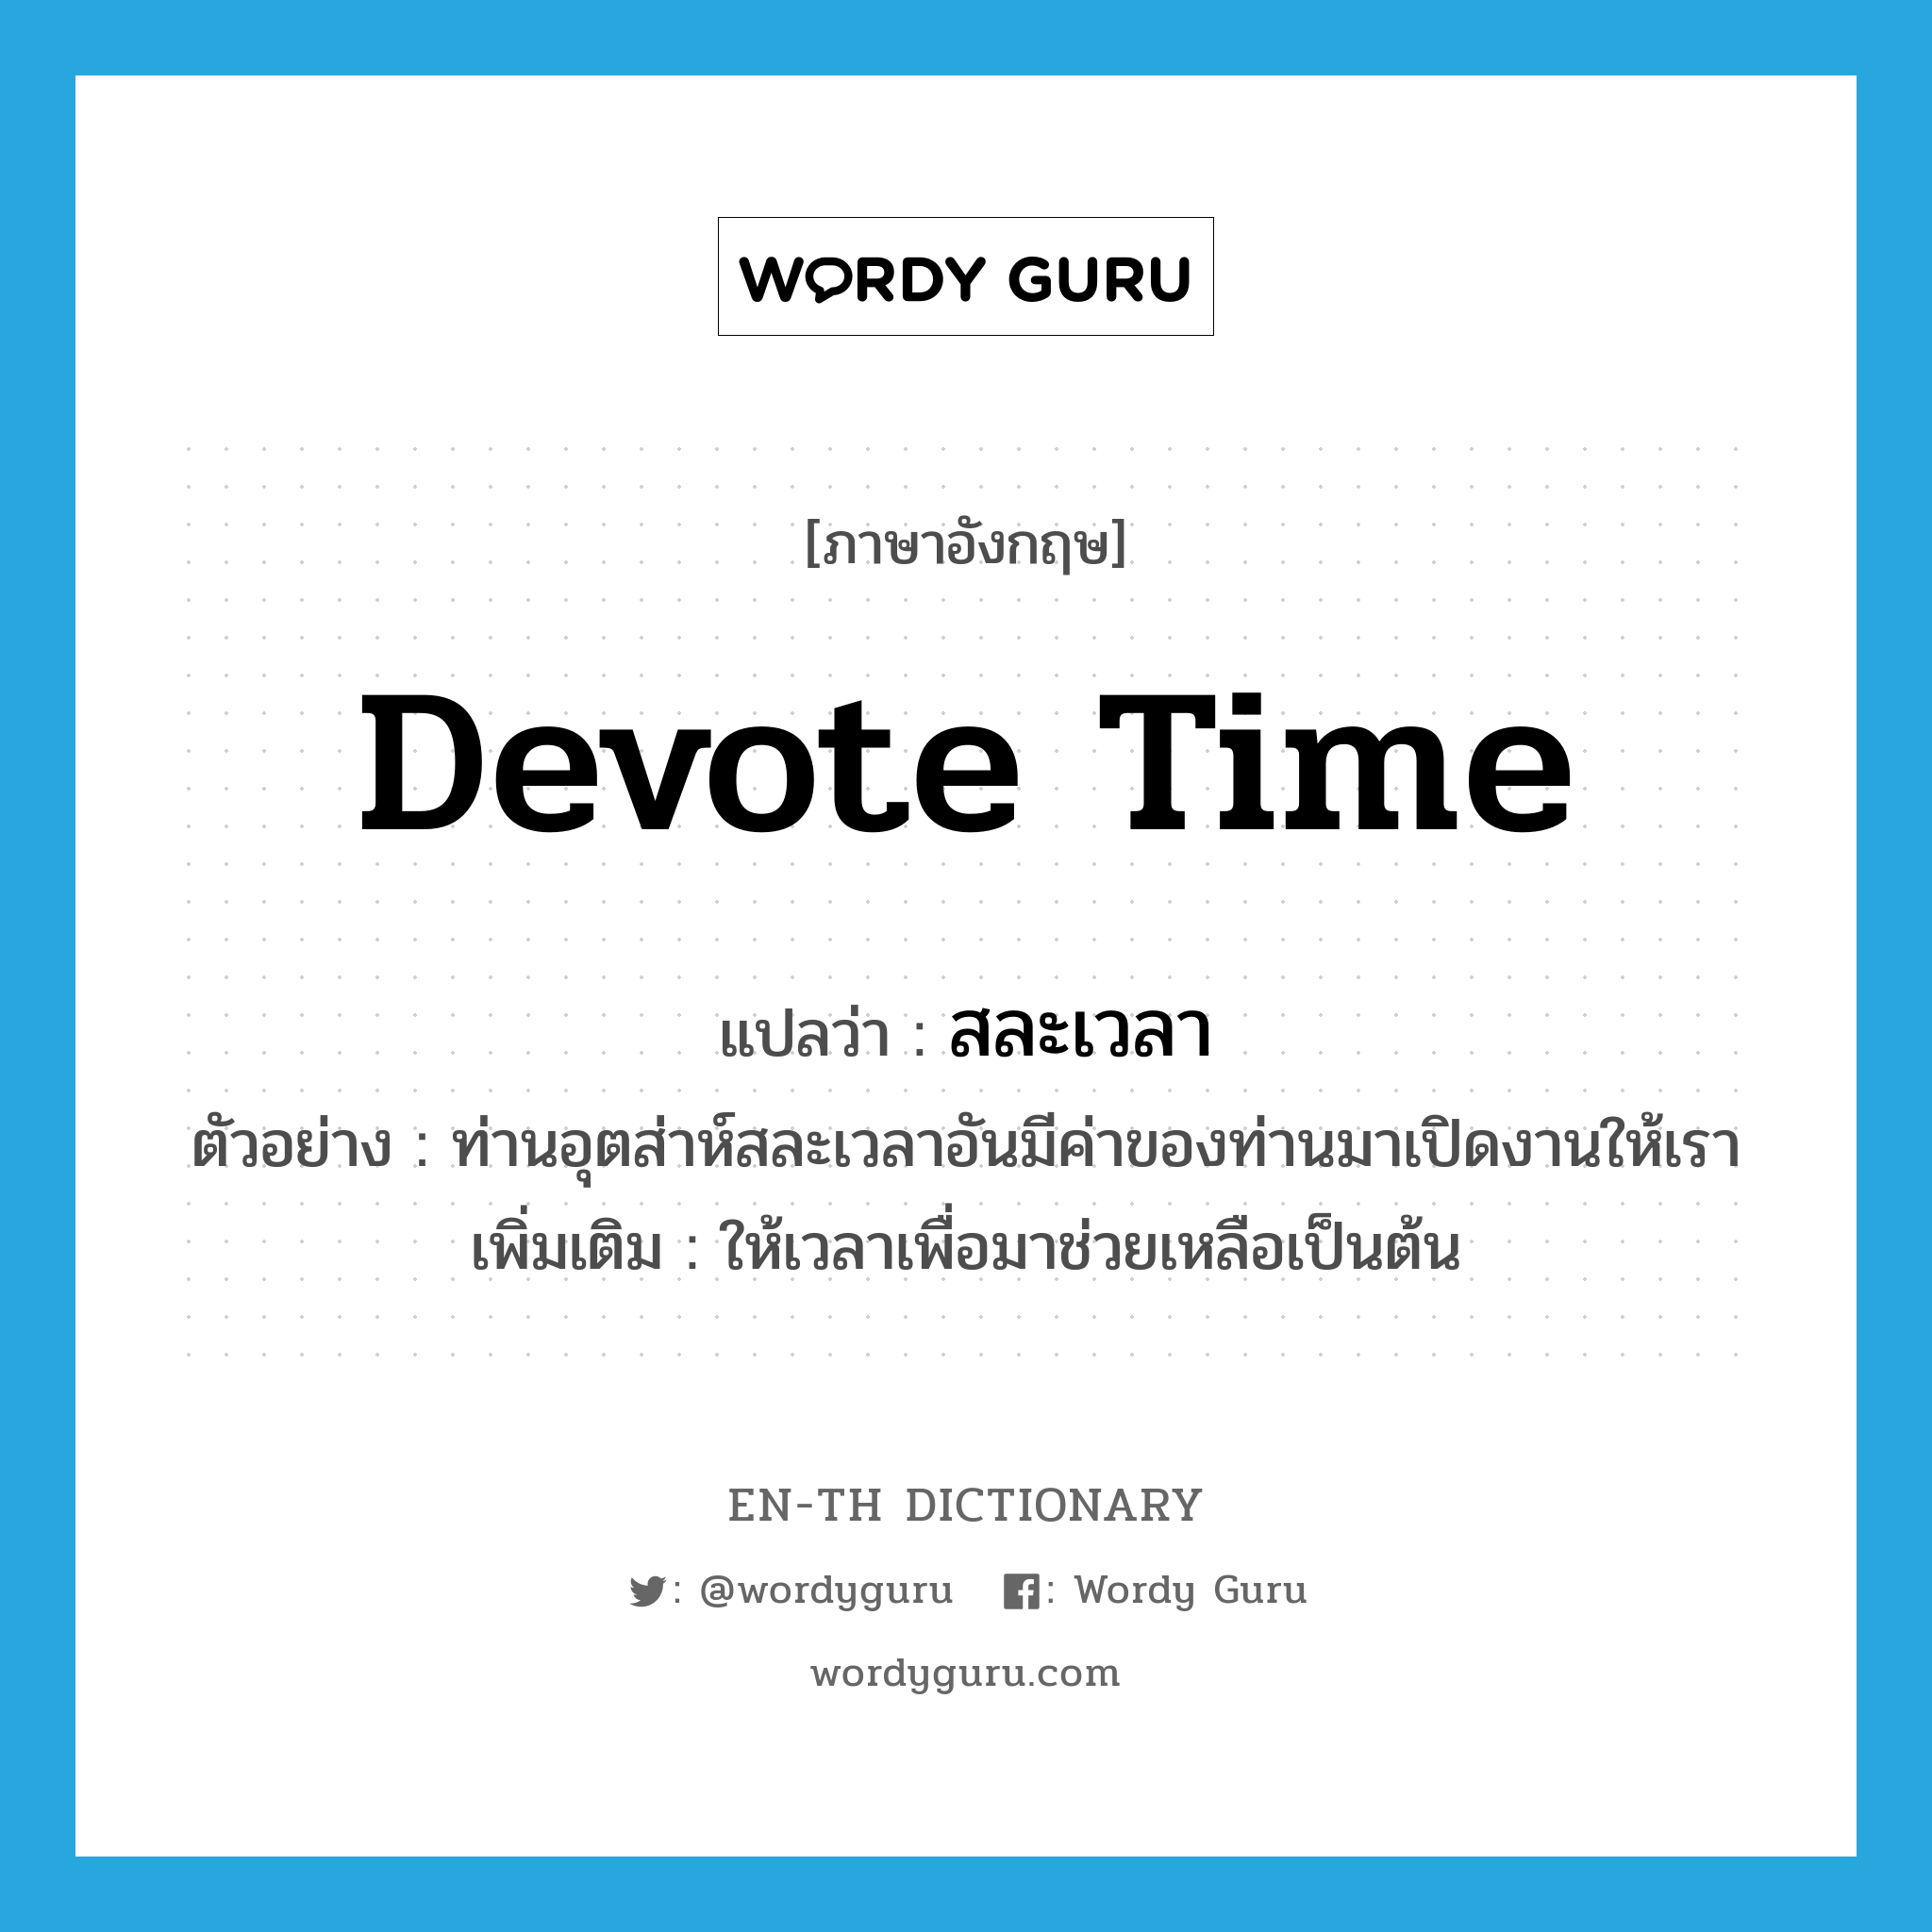 devote time แปลว่า?, คำศัพท์ภาษาอังกฤษ devote time แปลว่า สละเวลา ประเภท V ตัวอย่าง ท่านอุตส่าห์สละเวลาอันมีค่าของท่านมาเปิดงานให้เรา เพิ่มเติม ให้เวลาเพื่อมาช่วยเหลือเป็นต้น หมวด V